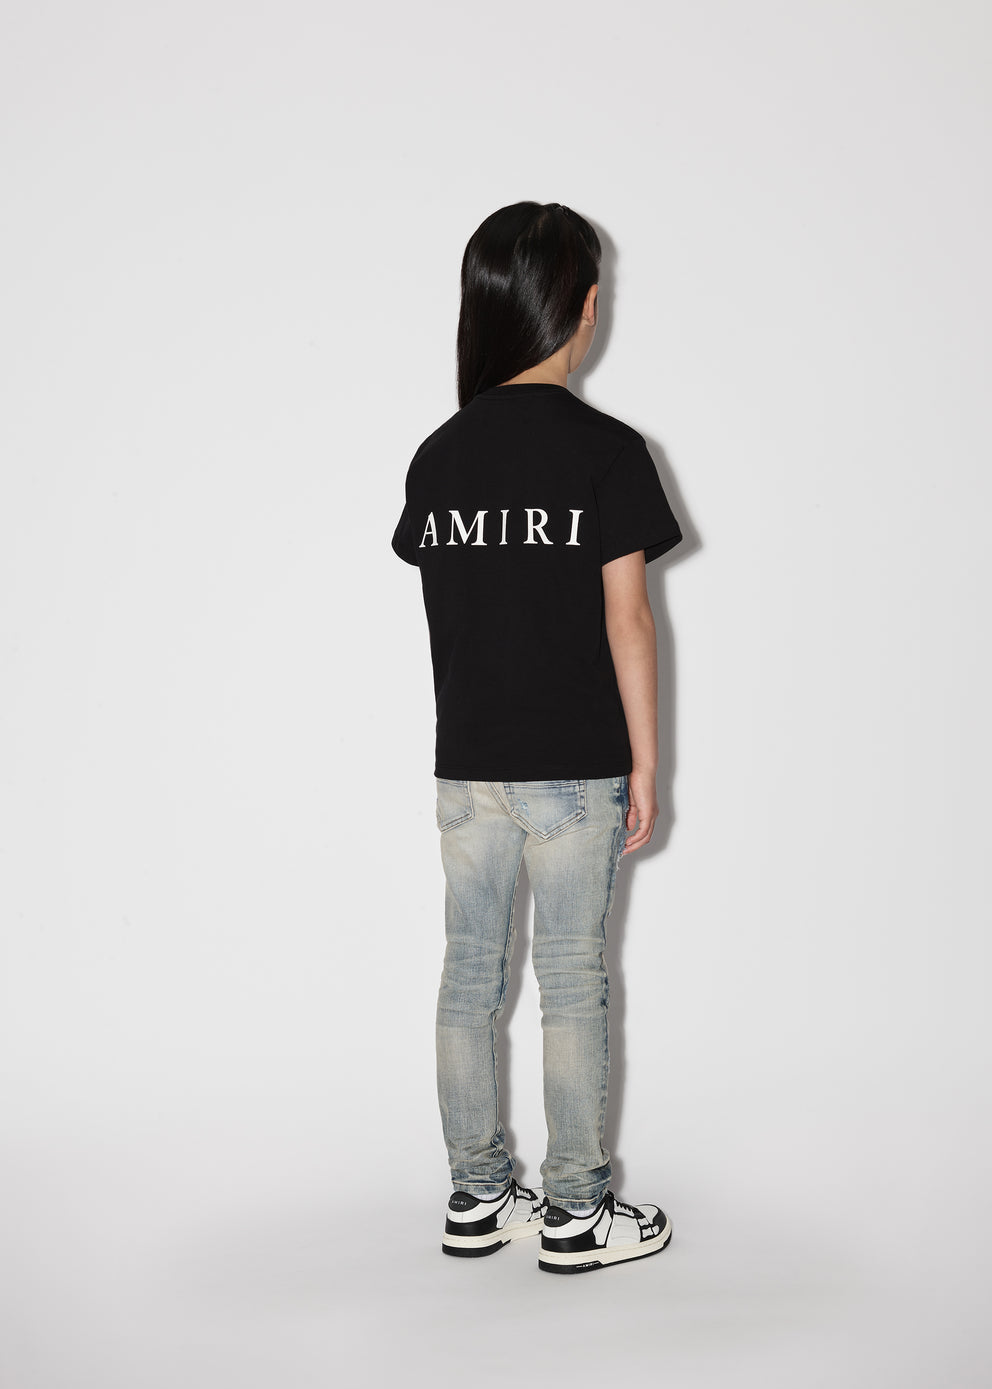 Camisetas Running Amiri M.A. Niños Negras | 6438JTBWX